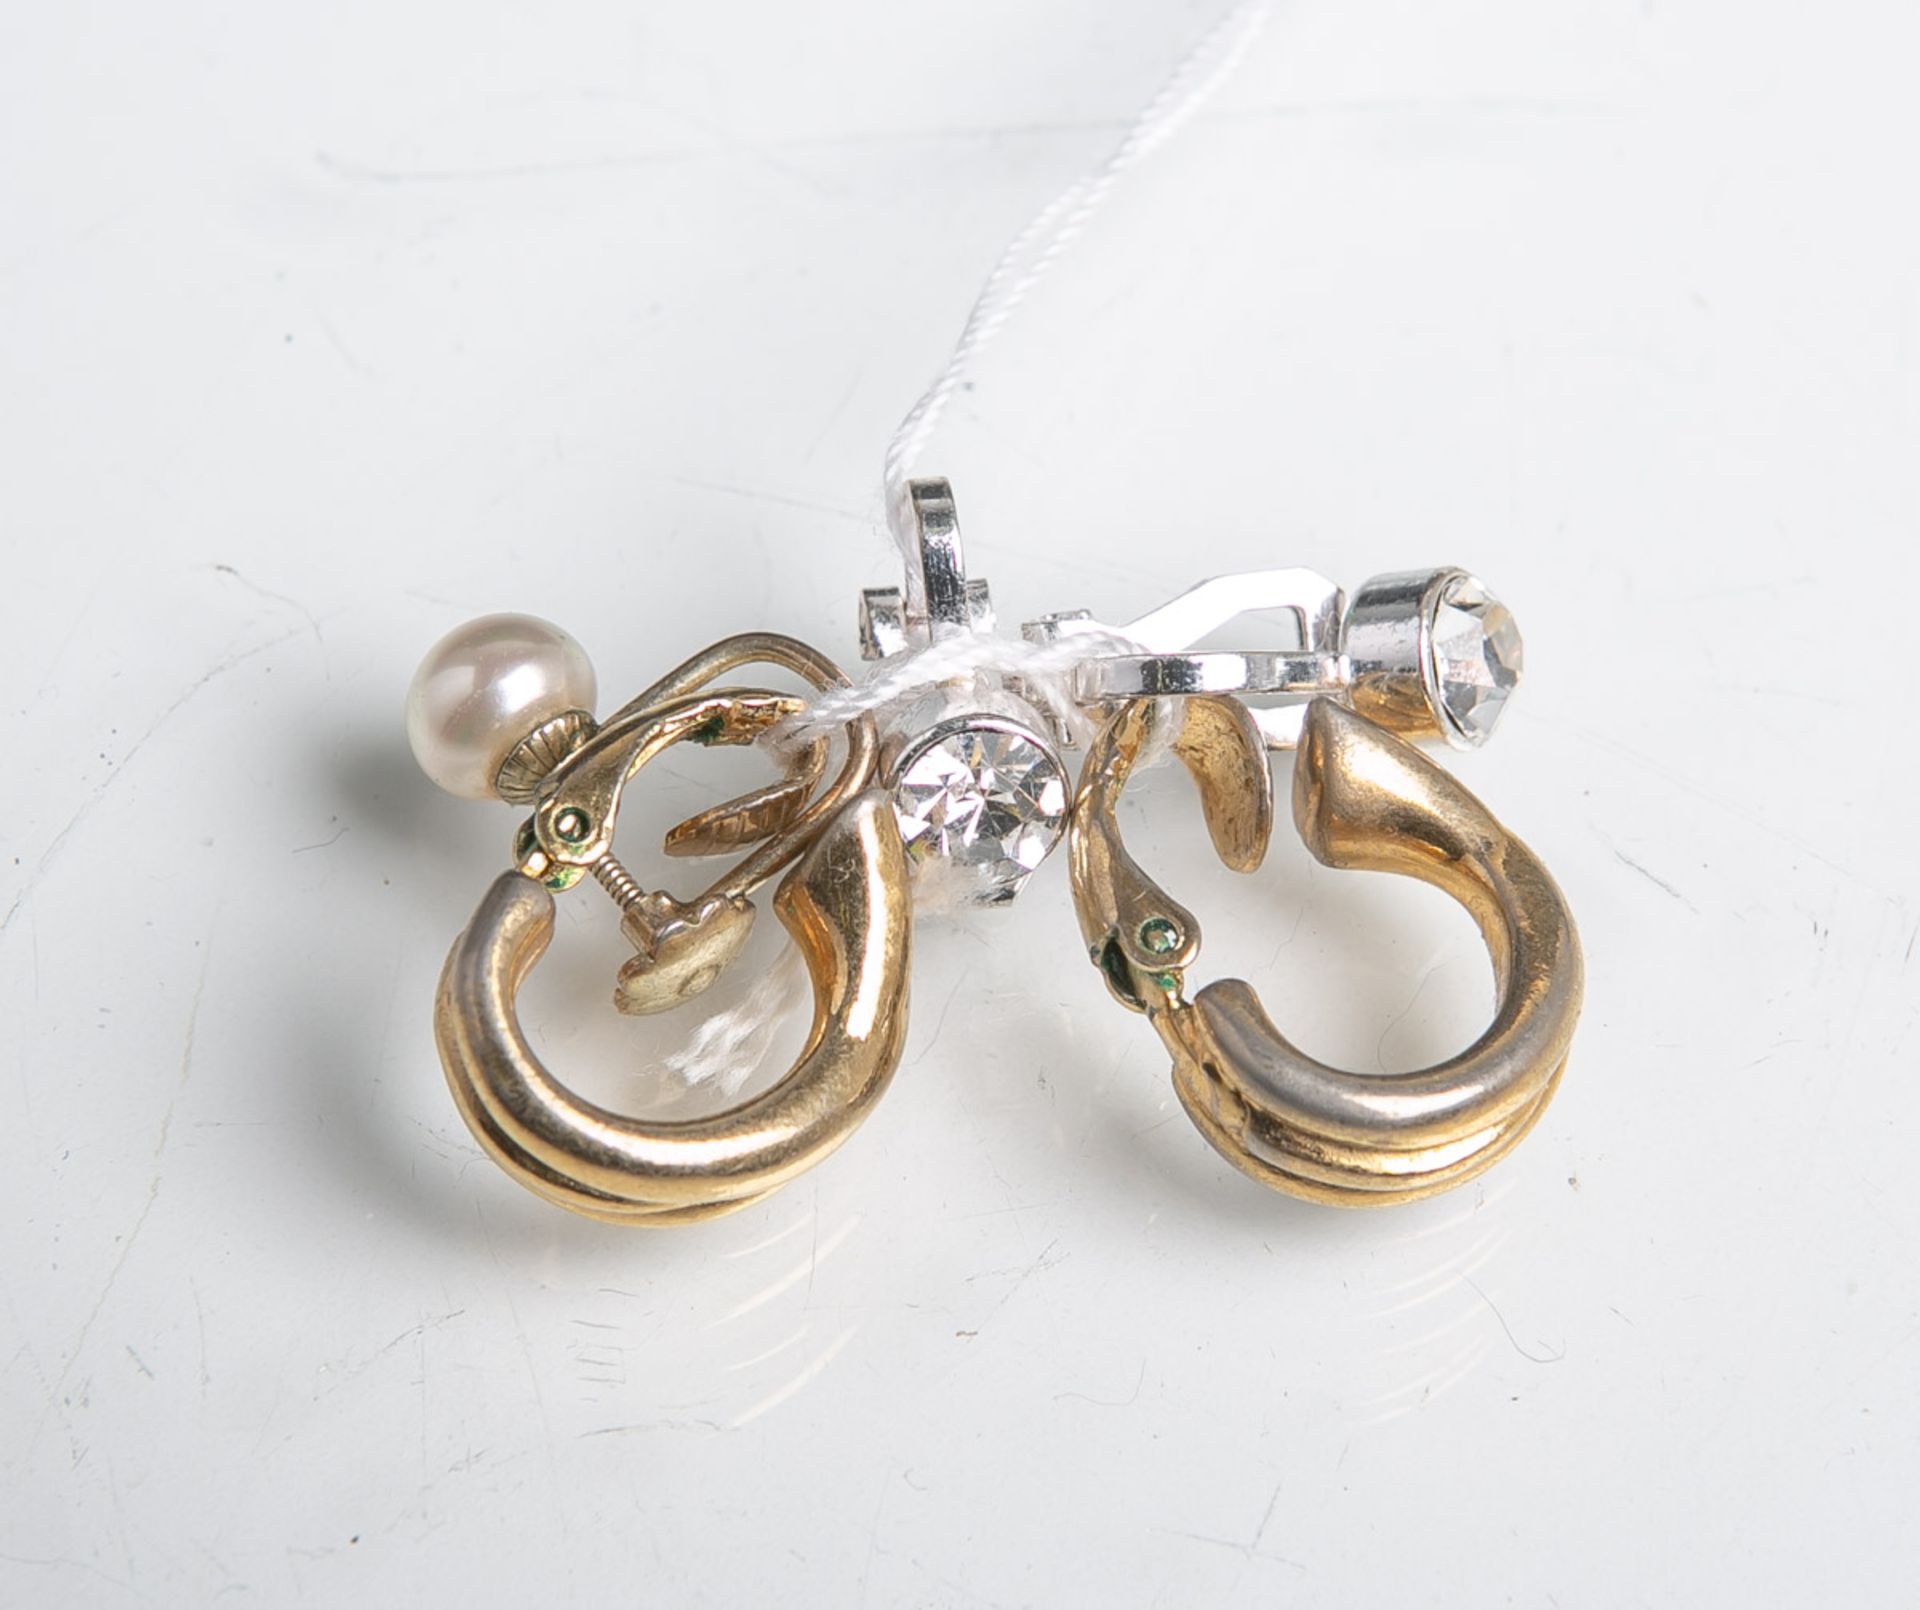 2 Paar Ohrringe/Klipse, versch. Materialien, davon 1 Paar je m. Glasstein besetzt, dazu 1